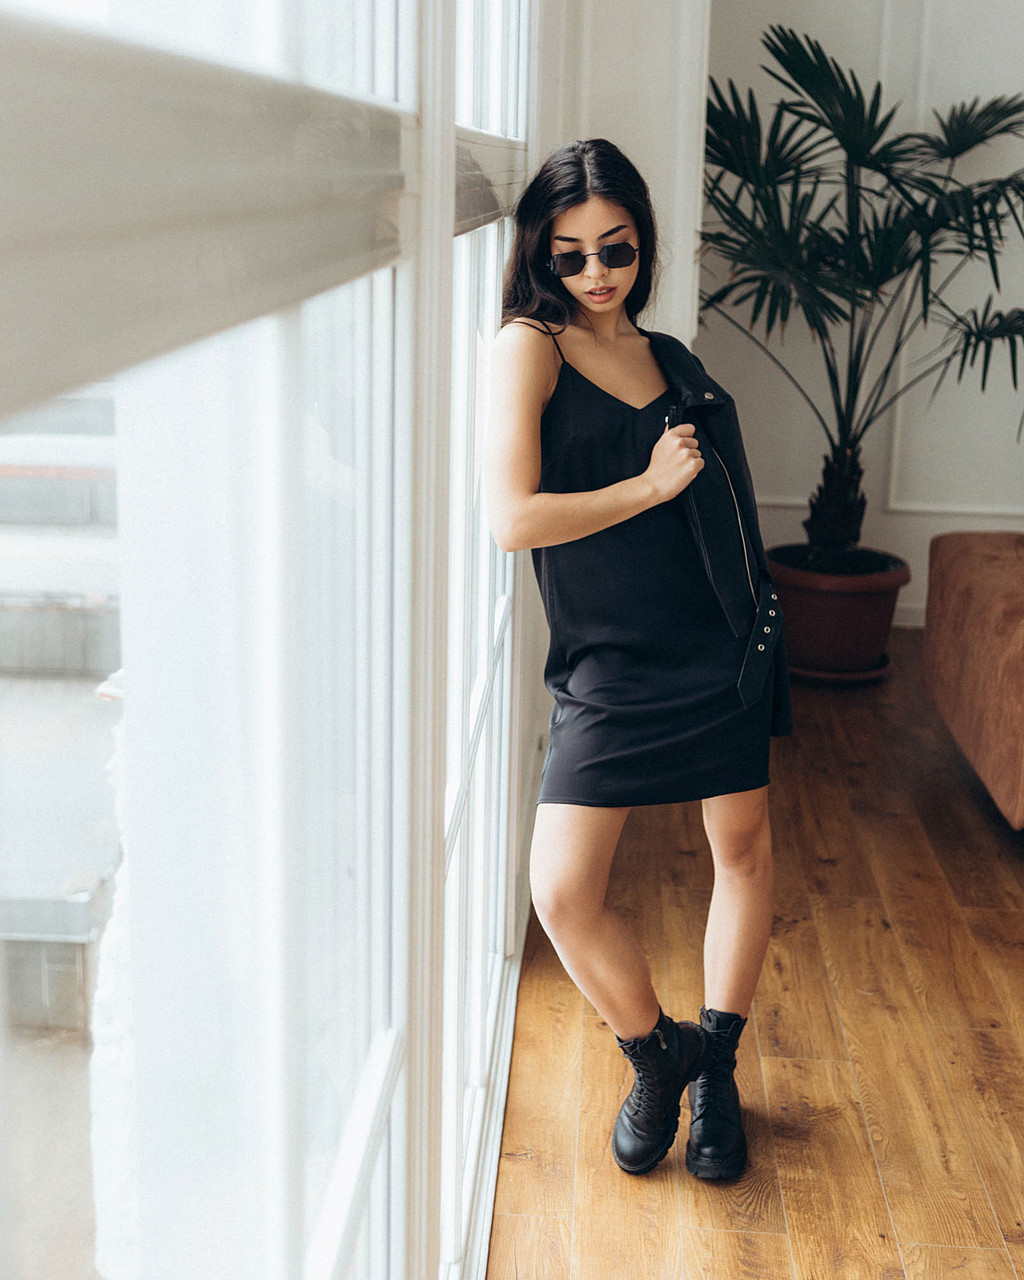 Шелковое платье женское летнее черное в бельевом стиле от бренда Тур - Фото 5